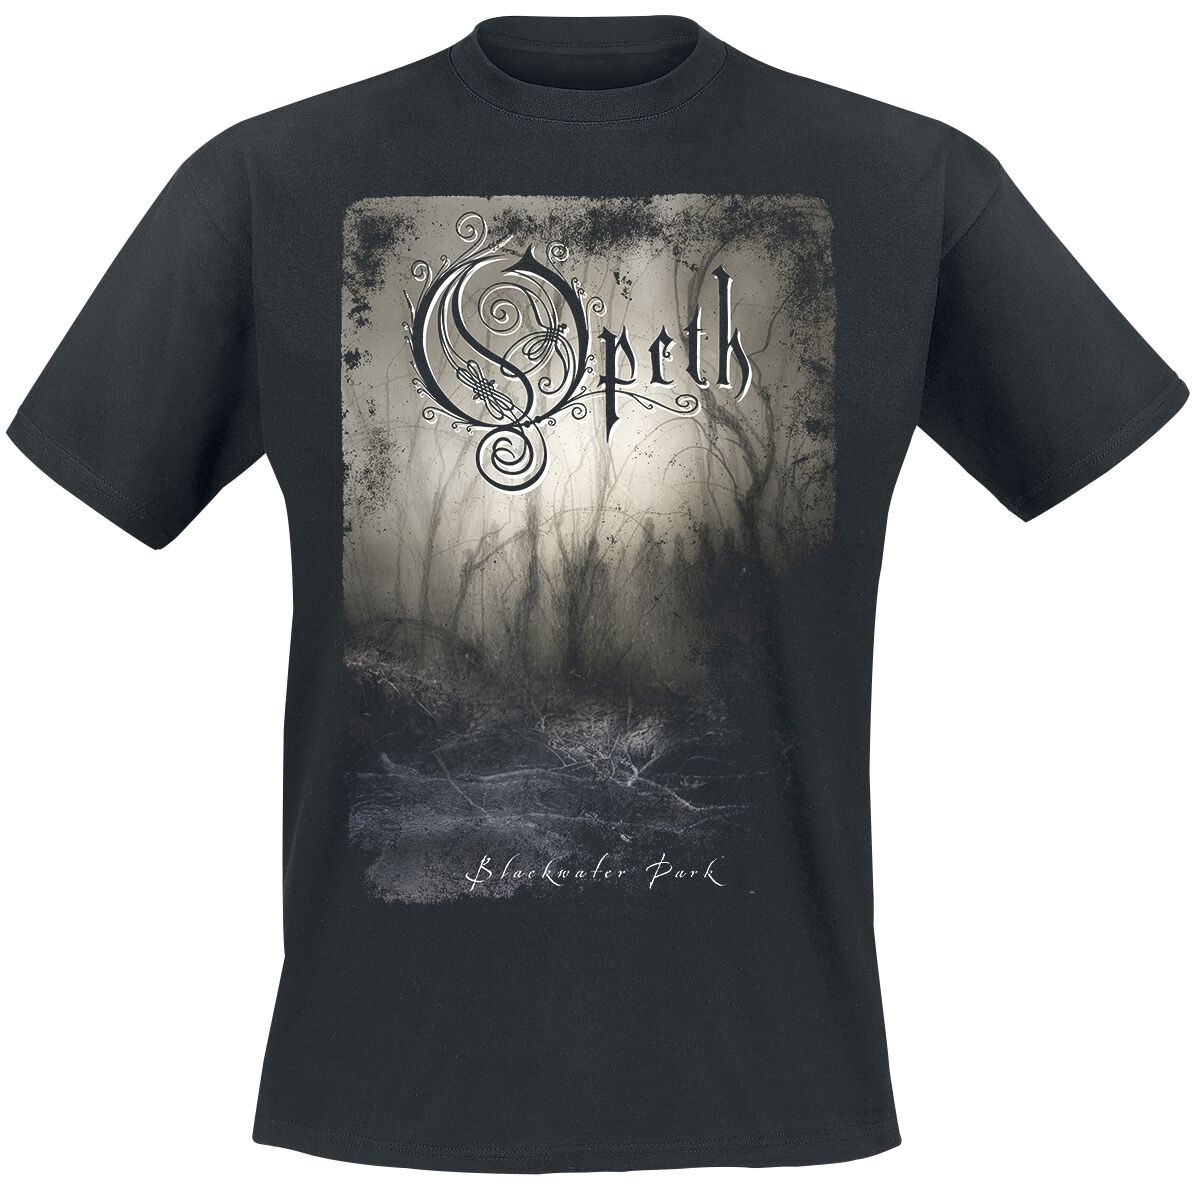 Opeth T-Shirt - Blackwater park - XXL - für Männer - Größe XXL - schwarz  - Lizenziertes Merchandise!